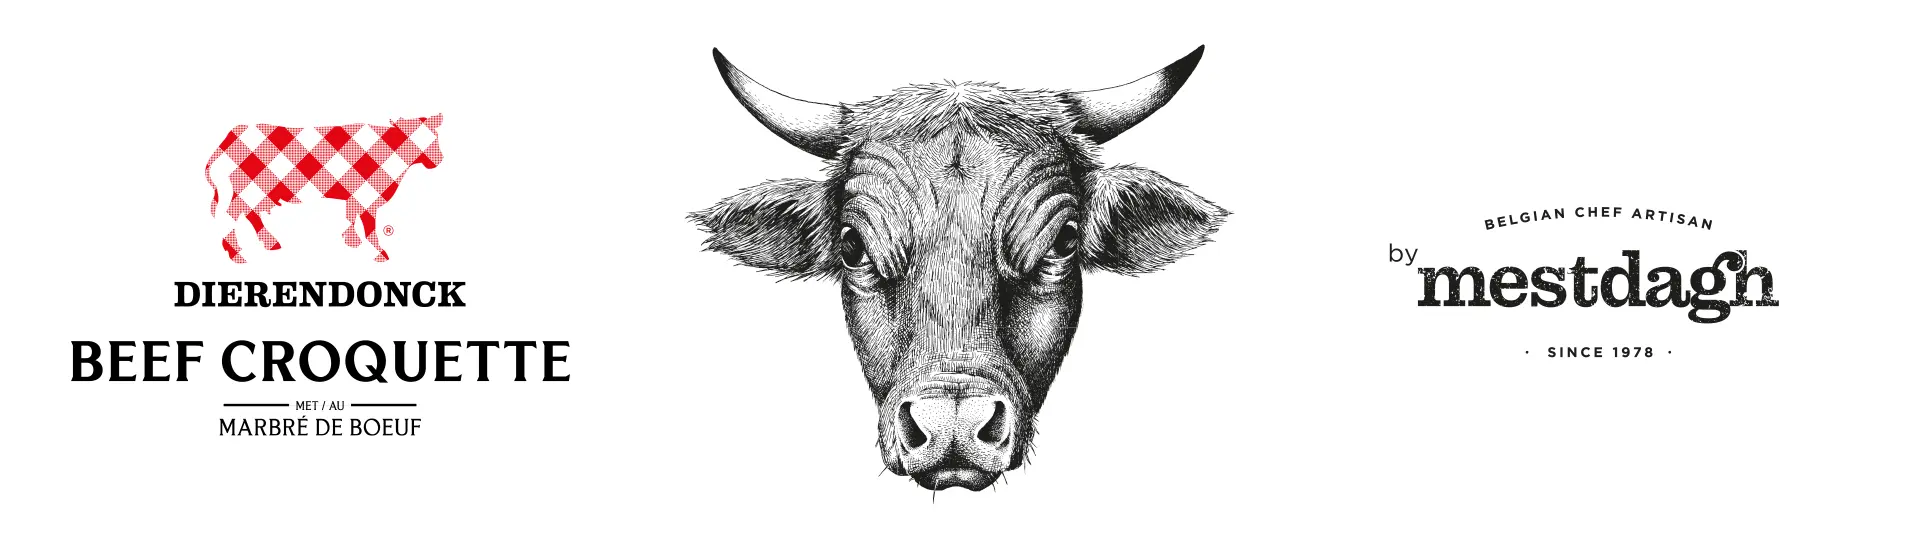 Beef Croquette en Mestdagh Artisan logo met rundskop